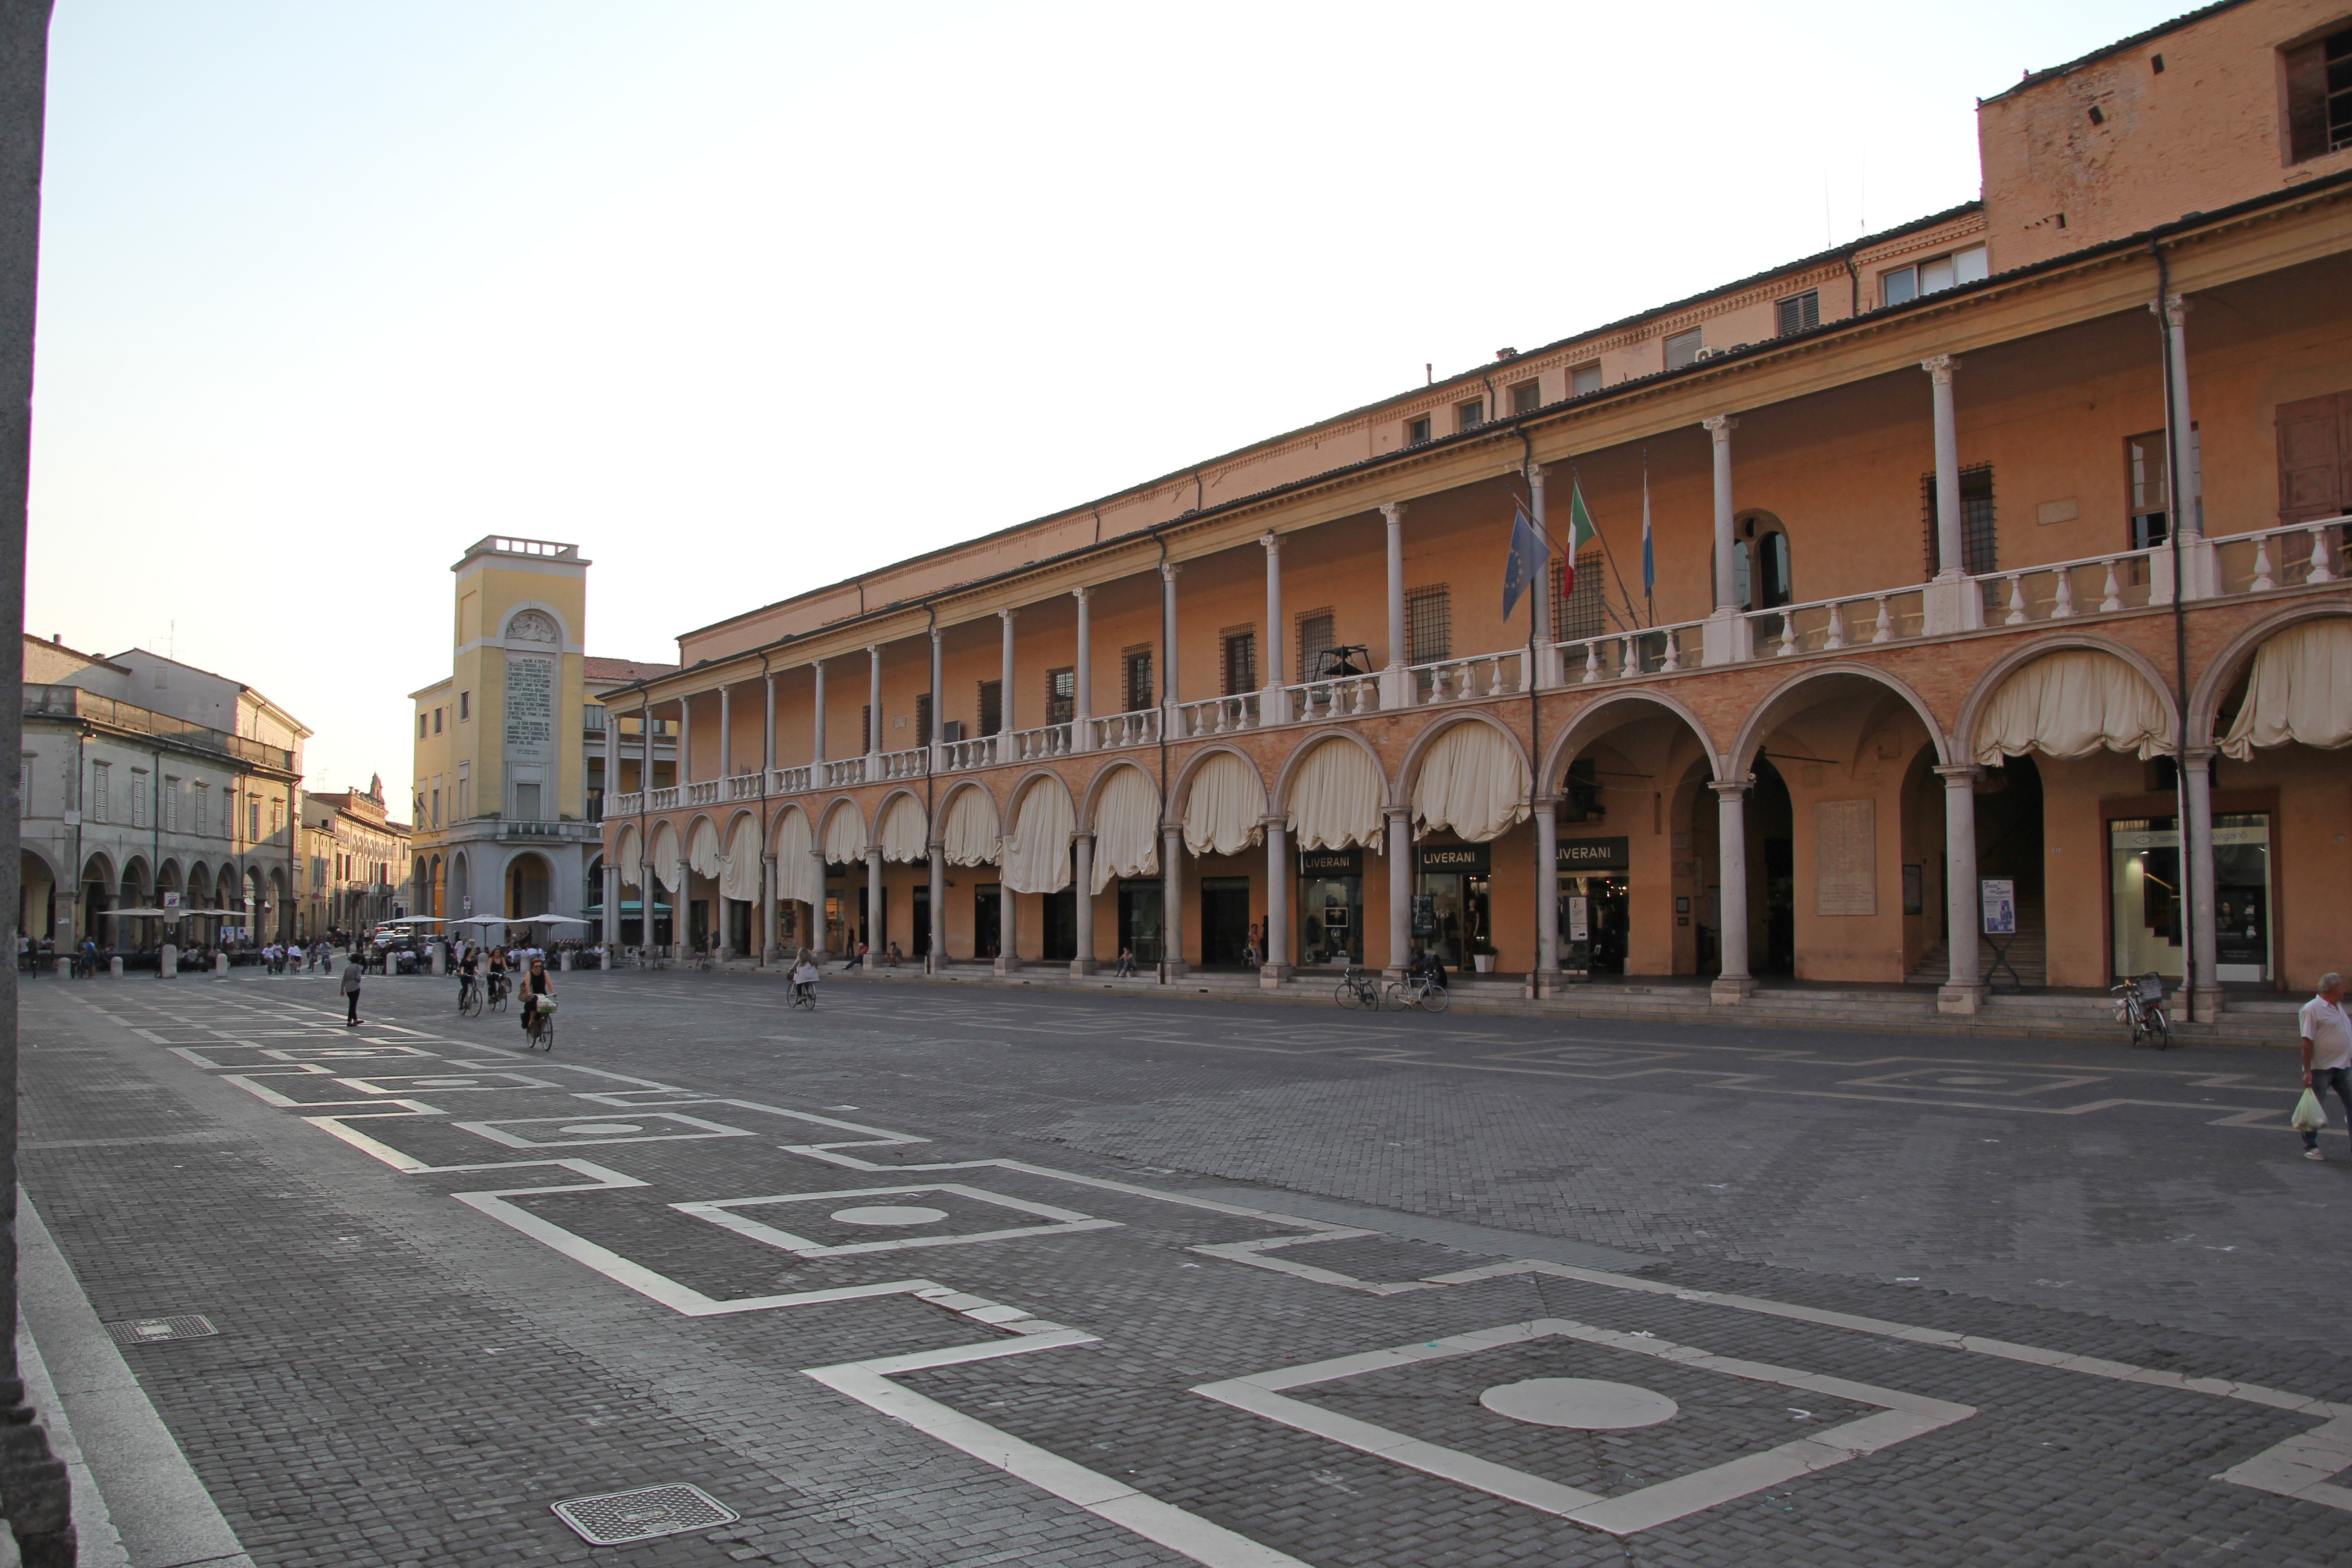 foto: https://upload.wikimedia.org/wikipedia/commons/f/fa/Faenza%2C_piazza_del_Popolo_%2802%29.jpg